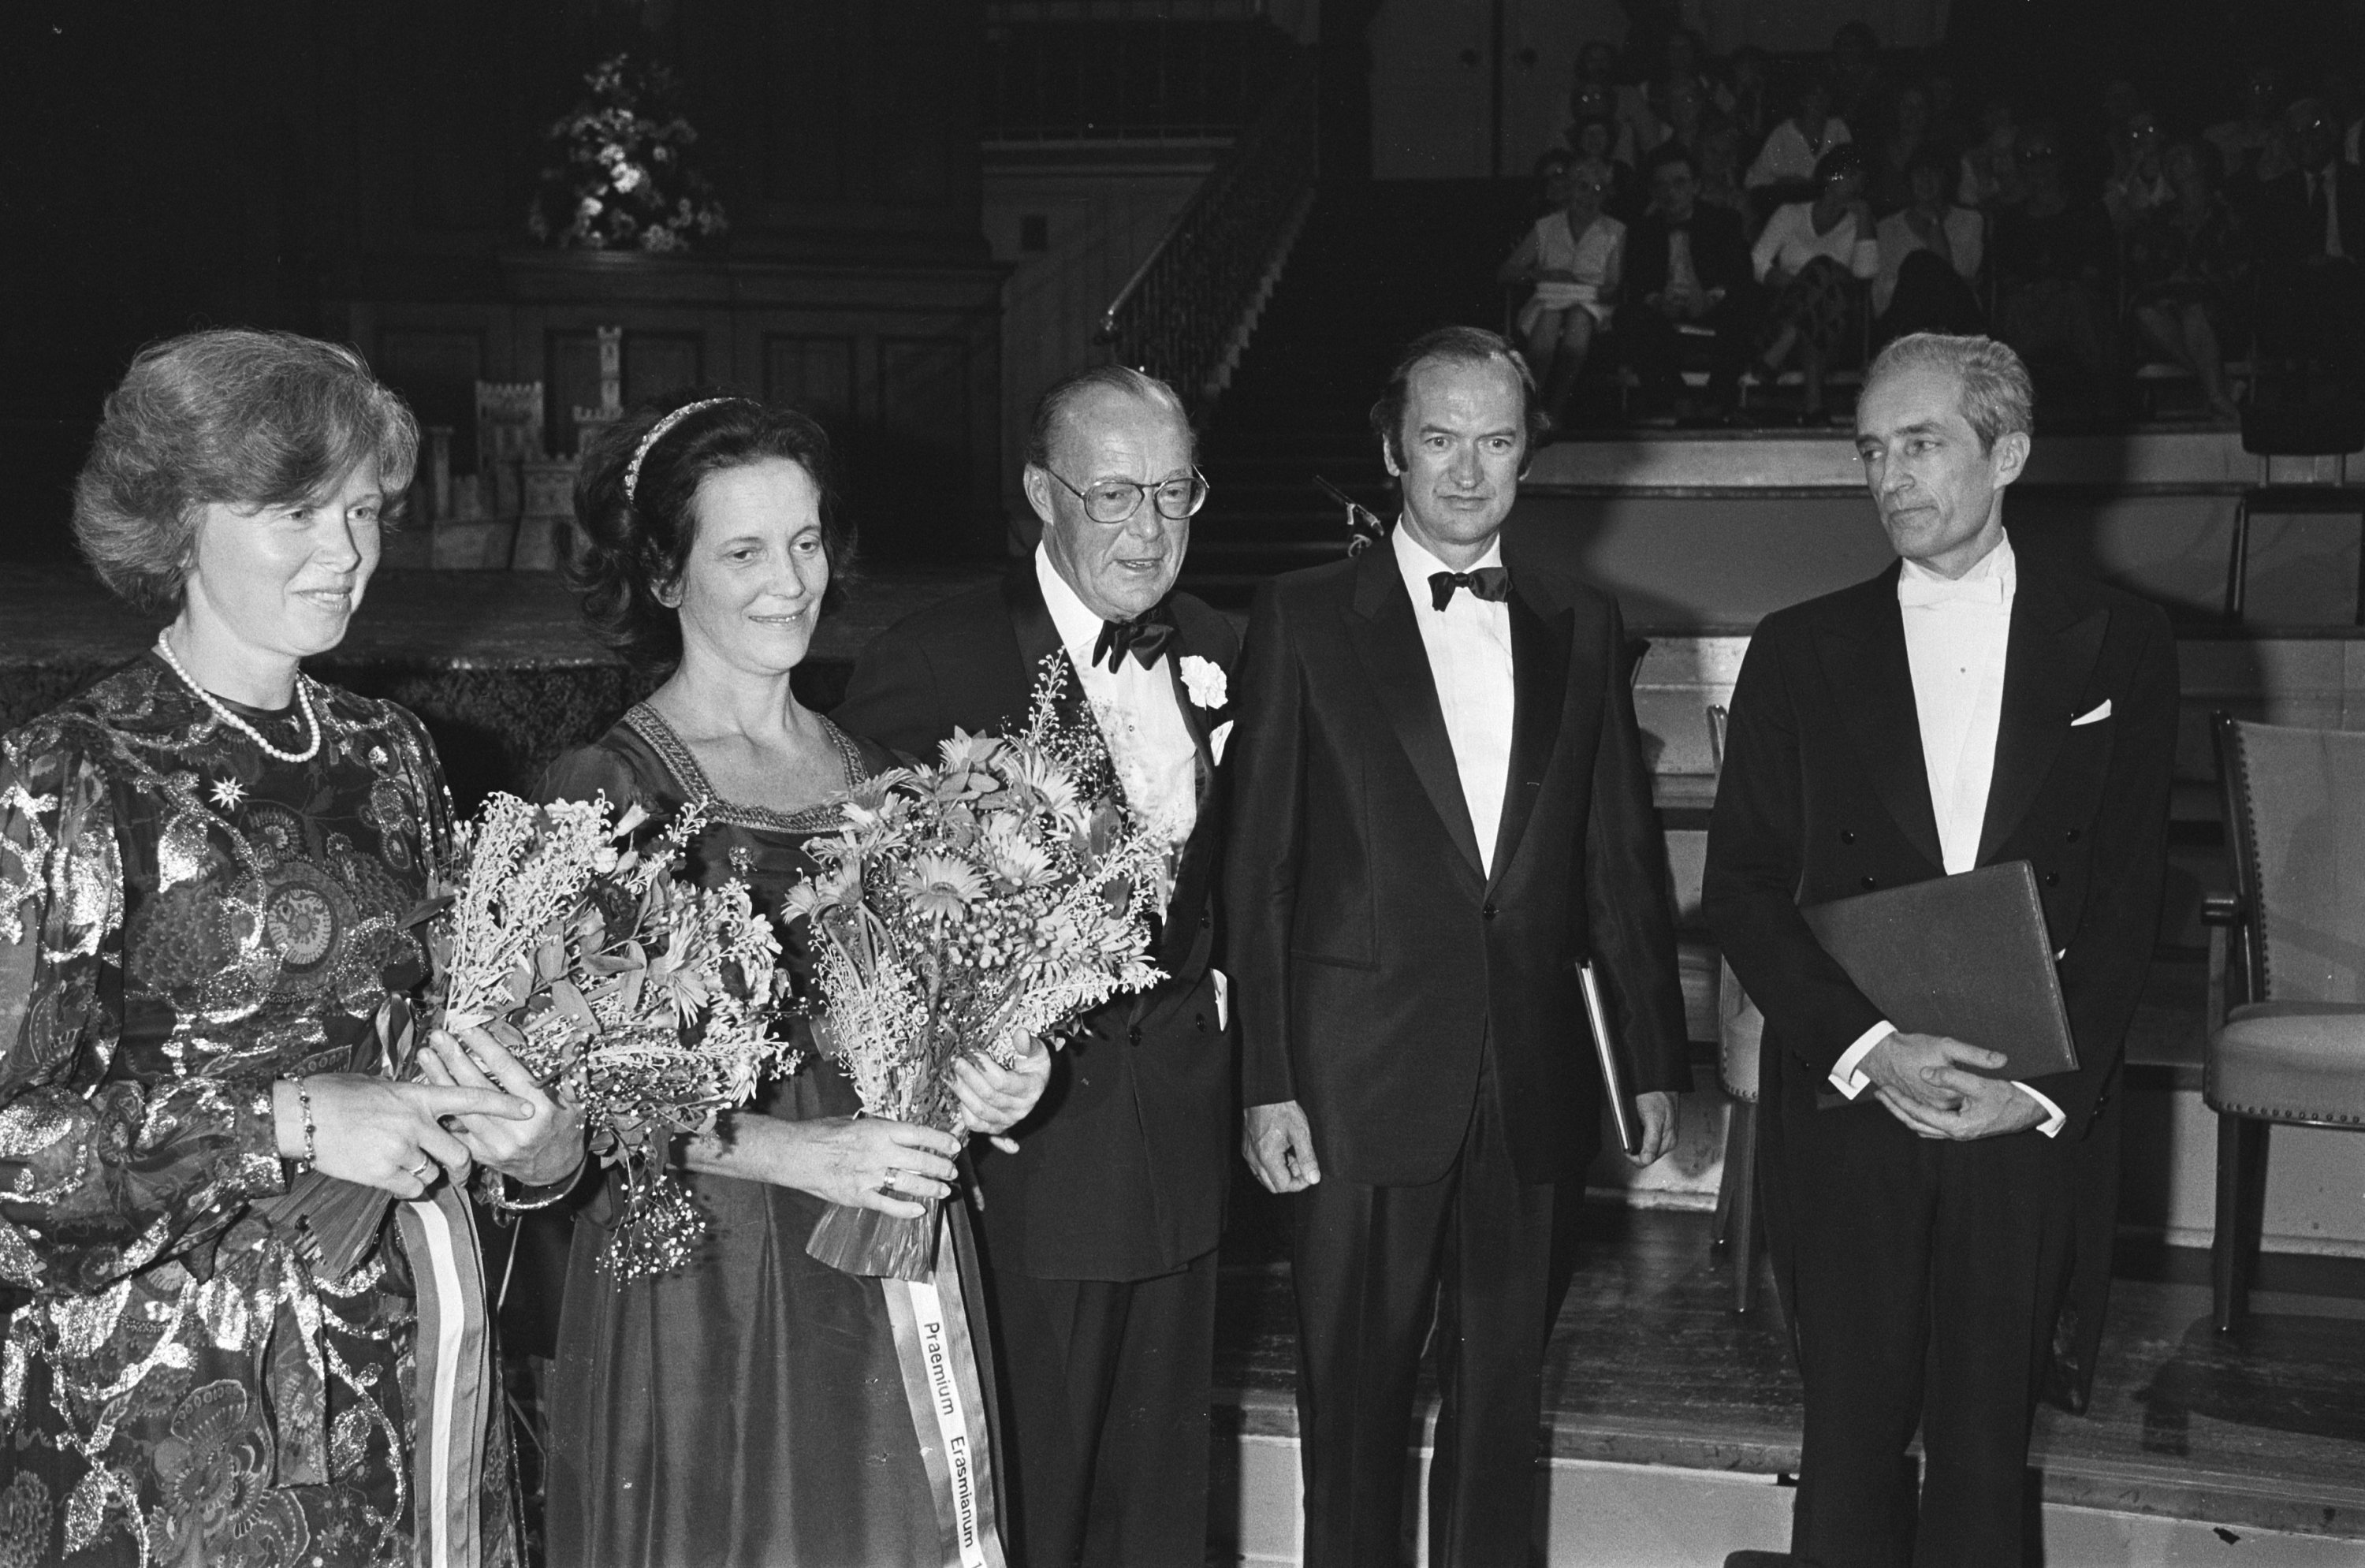 In Concertgebouw. V.l.n.r echtgenotes van de laureaten, prins Bernhard, de laureaat Nikolaus Harnoncourt en laureaat Gustav Leonhardt